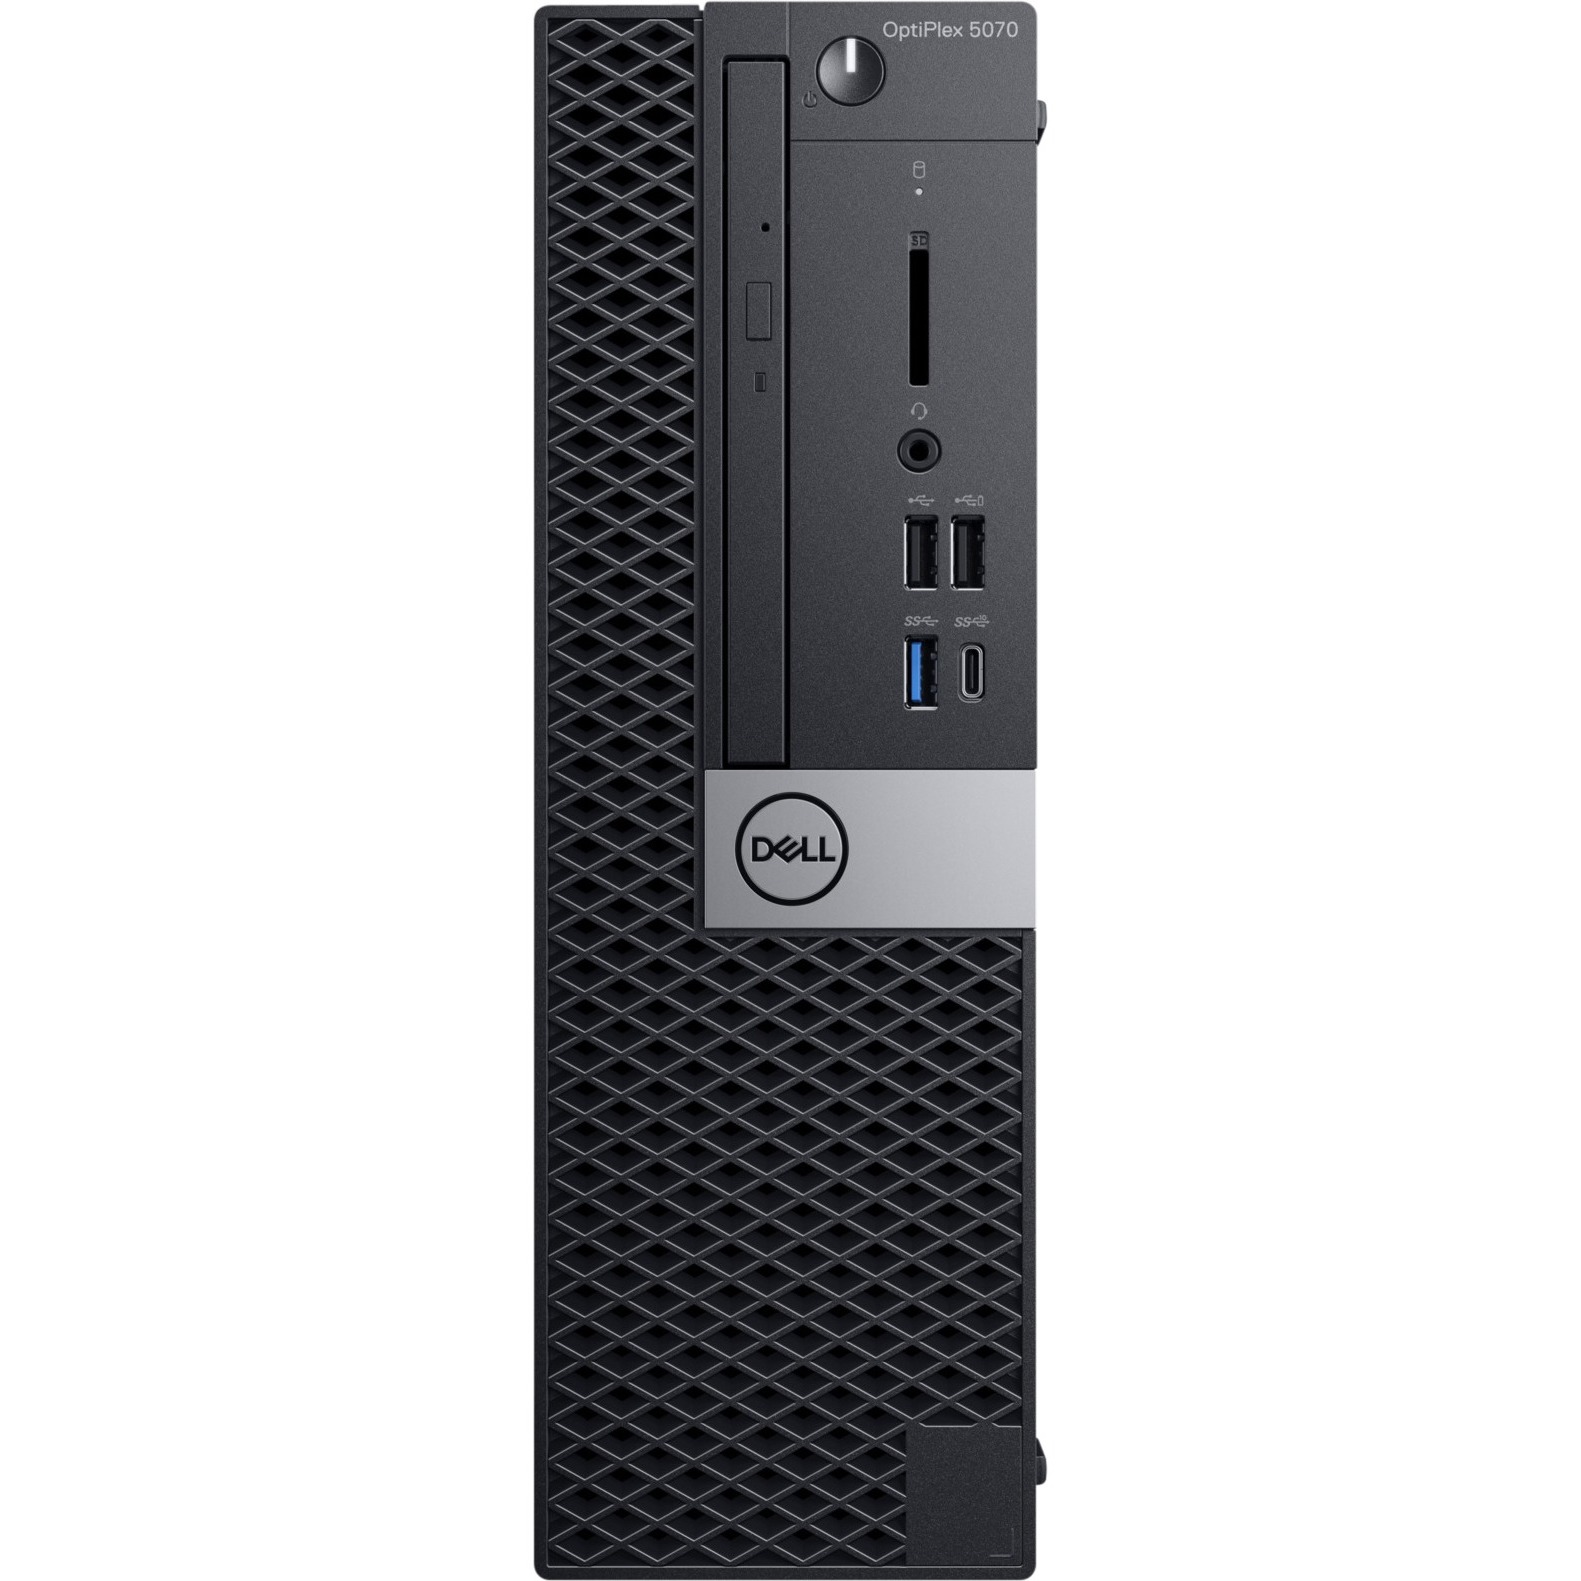 Dell OptiPlex 5070 Desktop Computer - Intel Core i5-9500 - 8GB RAM - 1TB HDD - Small Form Factor - image 3 of 5